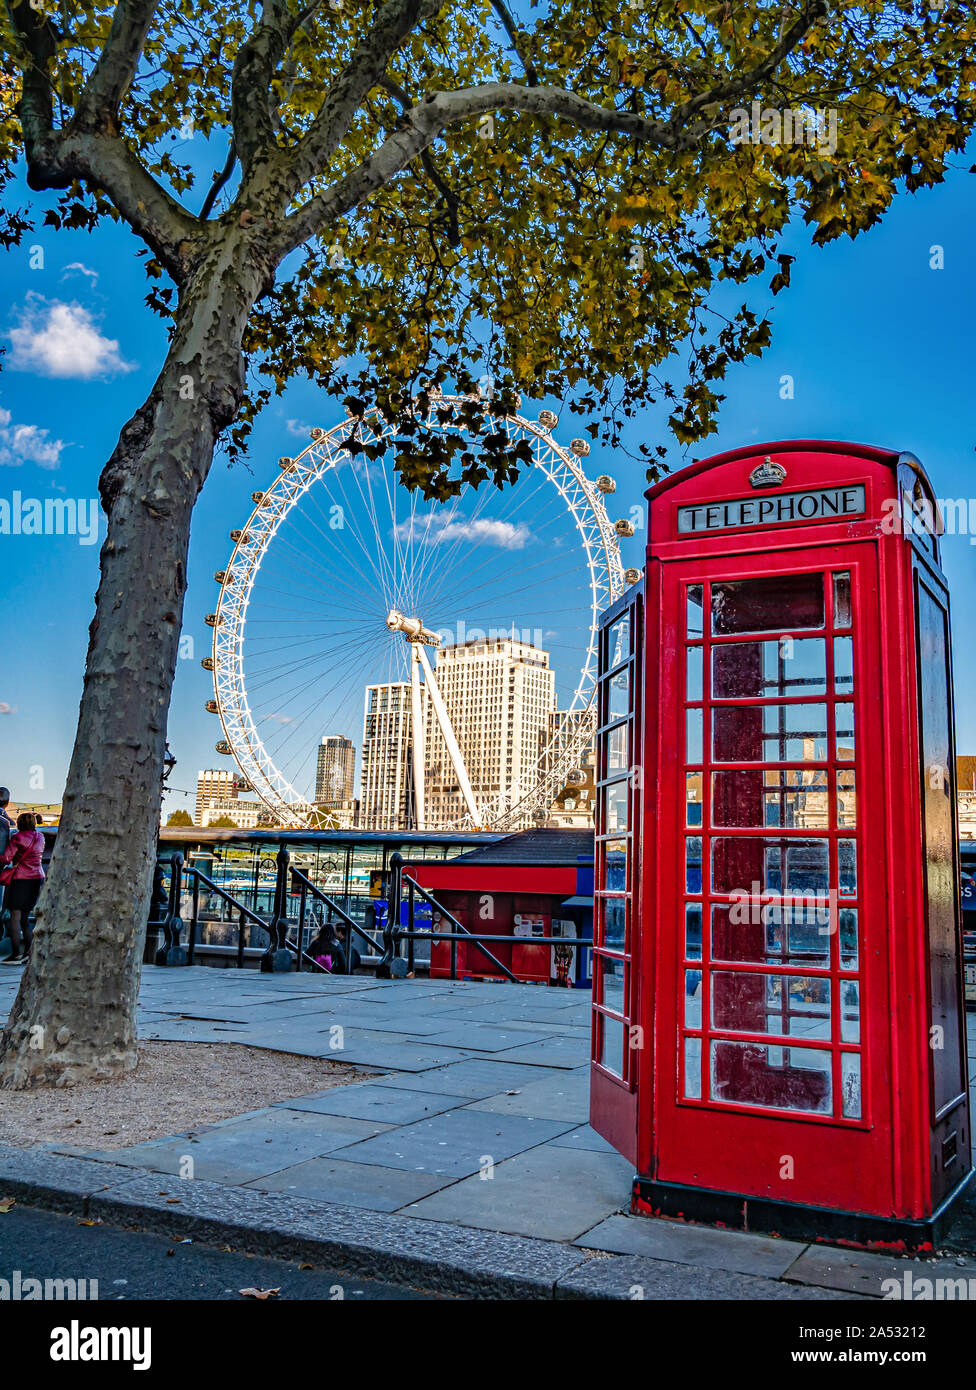 Londres, Angleterre, Royaume-Uni - Octobre 05, 2019 : London Eye et rouge cabine photo traditionnel sur la rive de la rivière Thames, en saison d'automne Banque D'Images